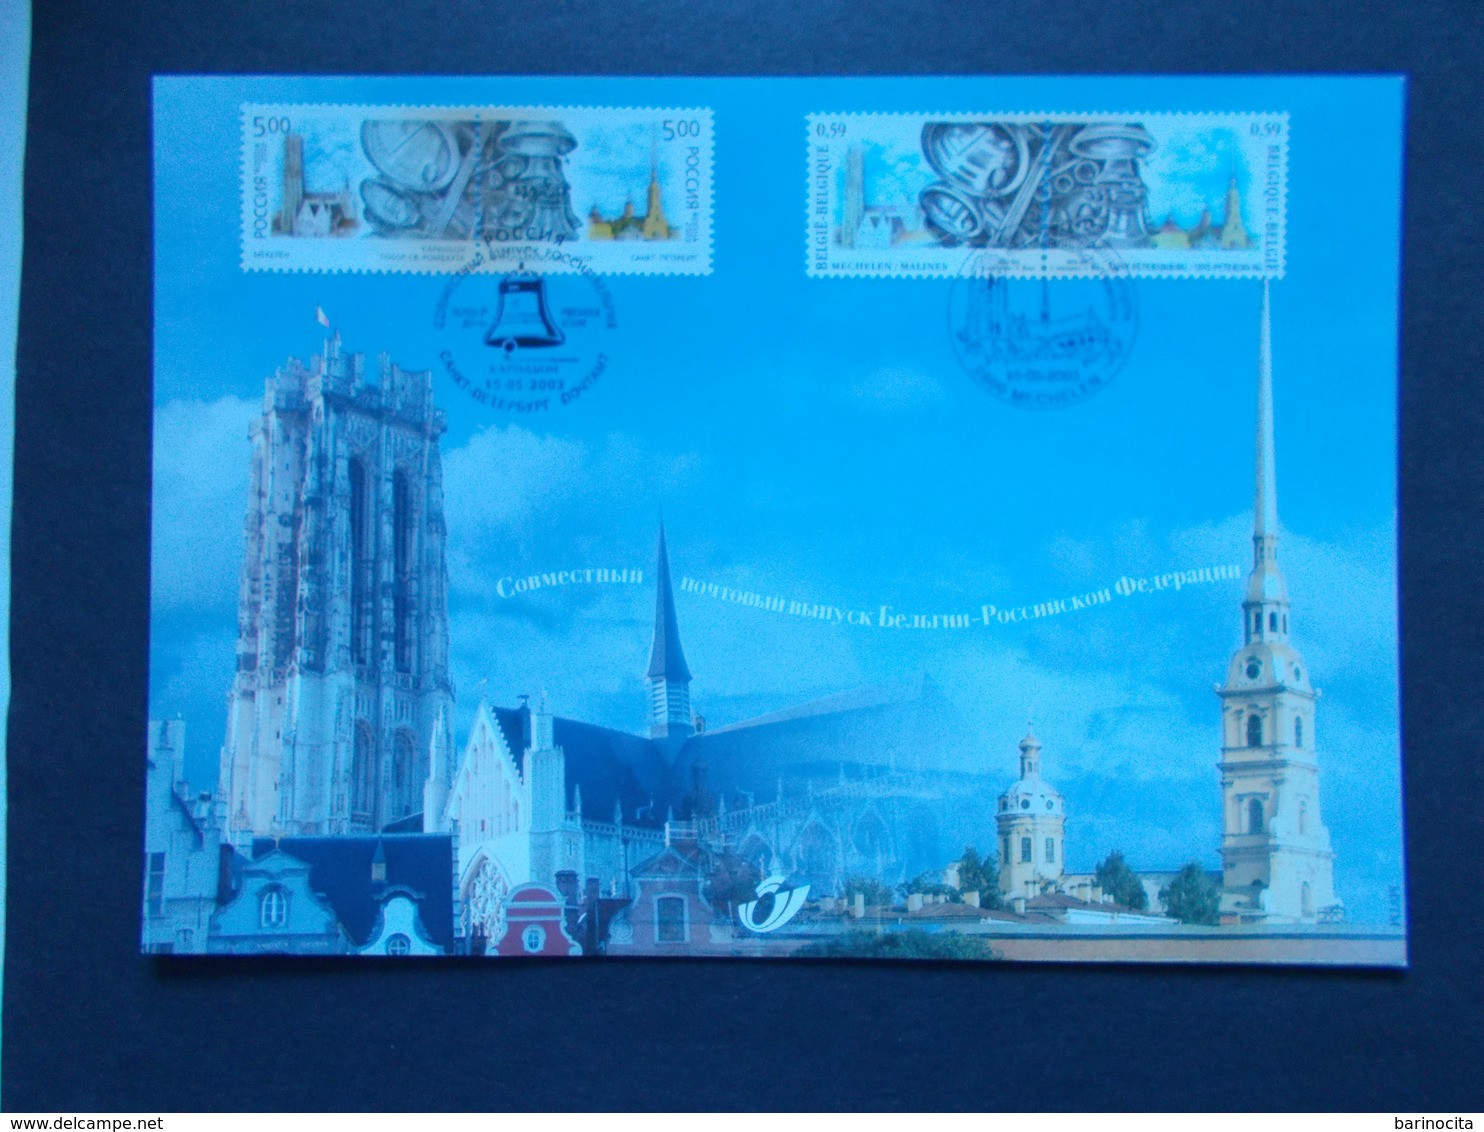 BELGIQUE -   N° 3170  HK  Année  2003   EMISSIONS  COMMUNES  RUSSIE    ( Voir Photo ) 68 - Erinnerungskarten – Gemeinschaftsausgaben [HK]